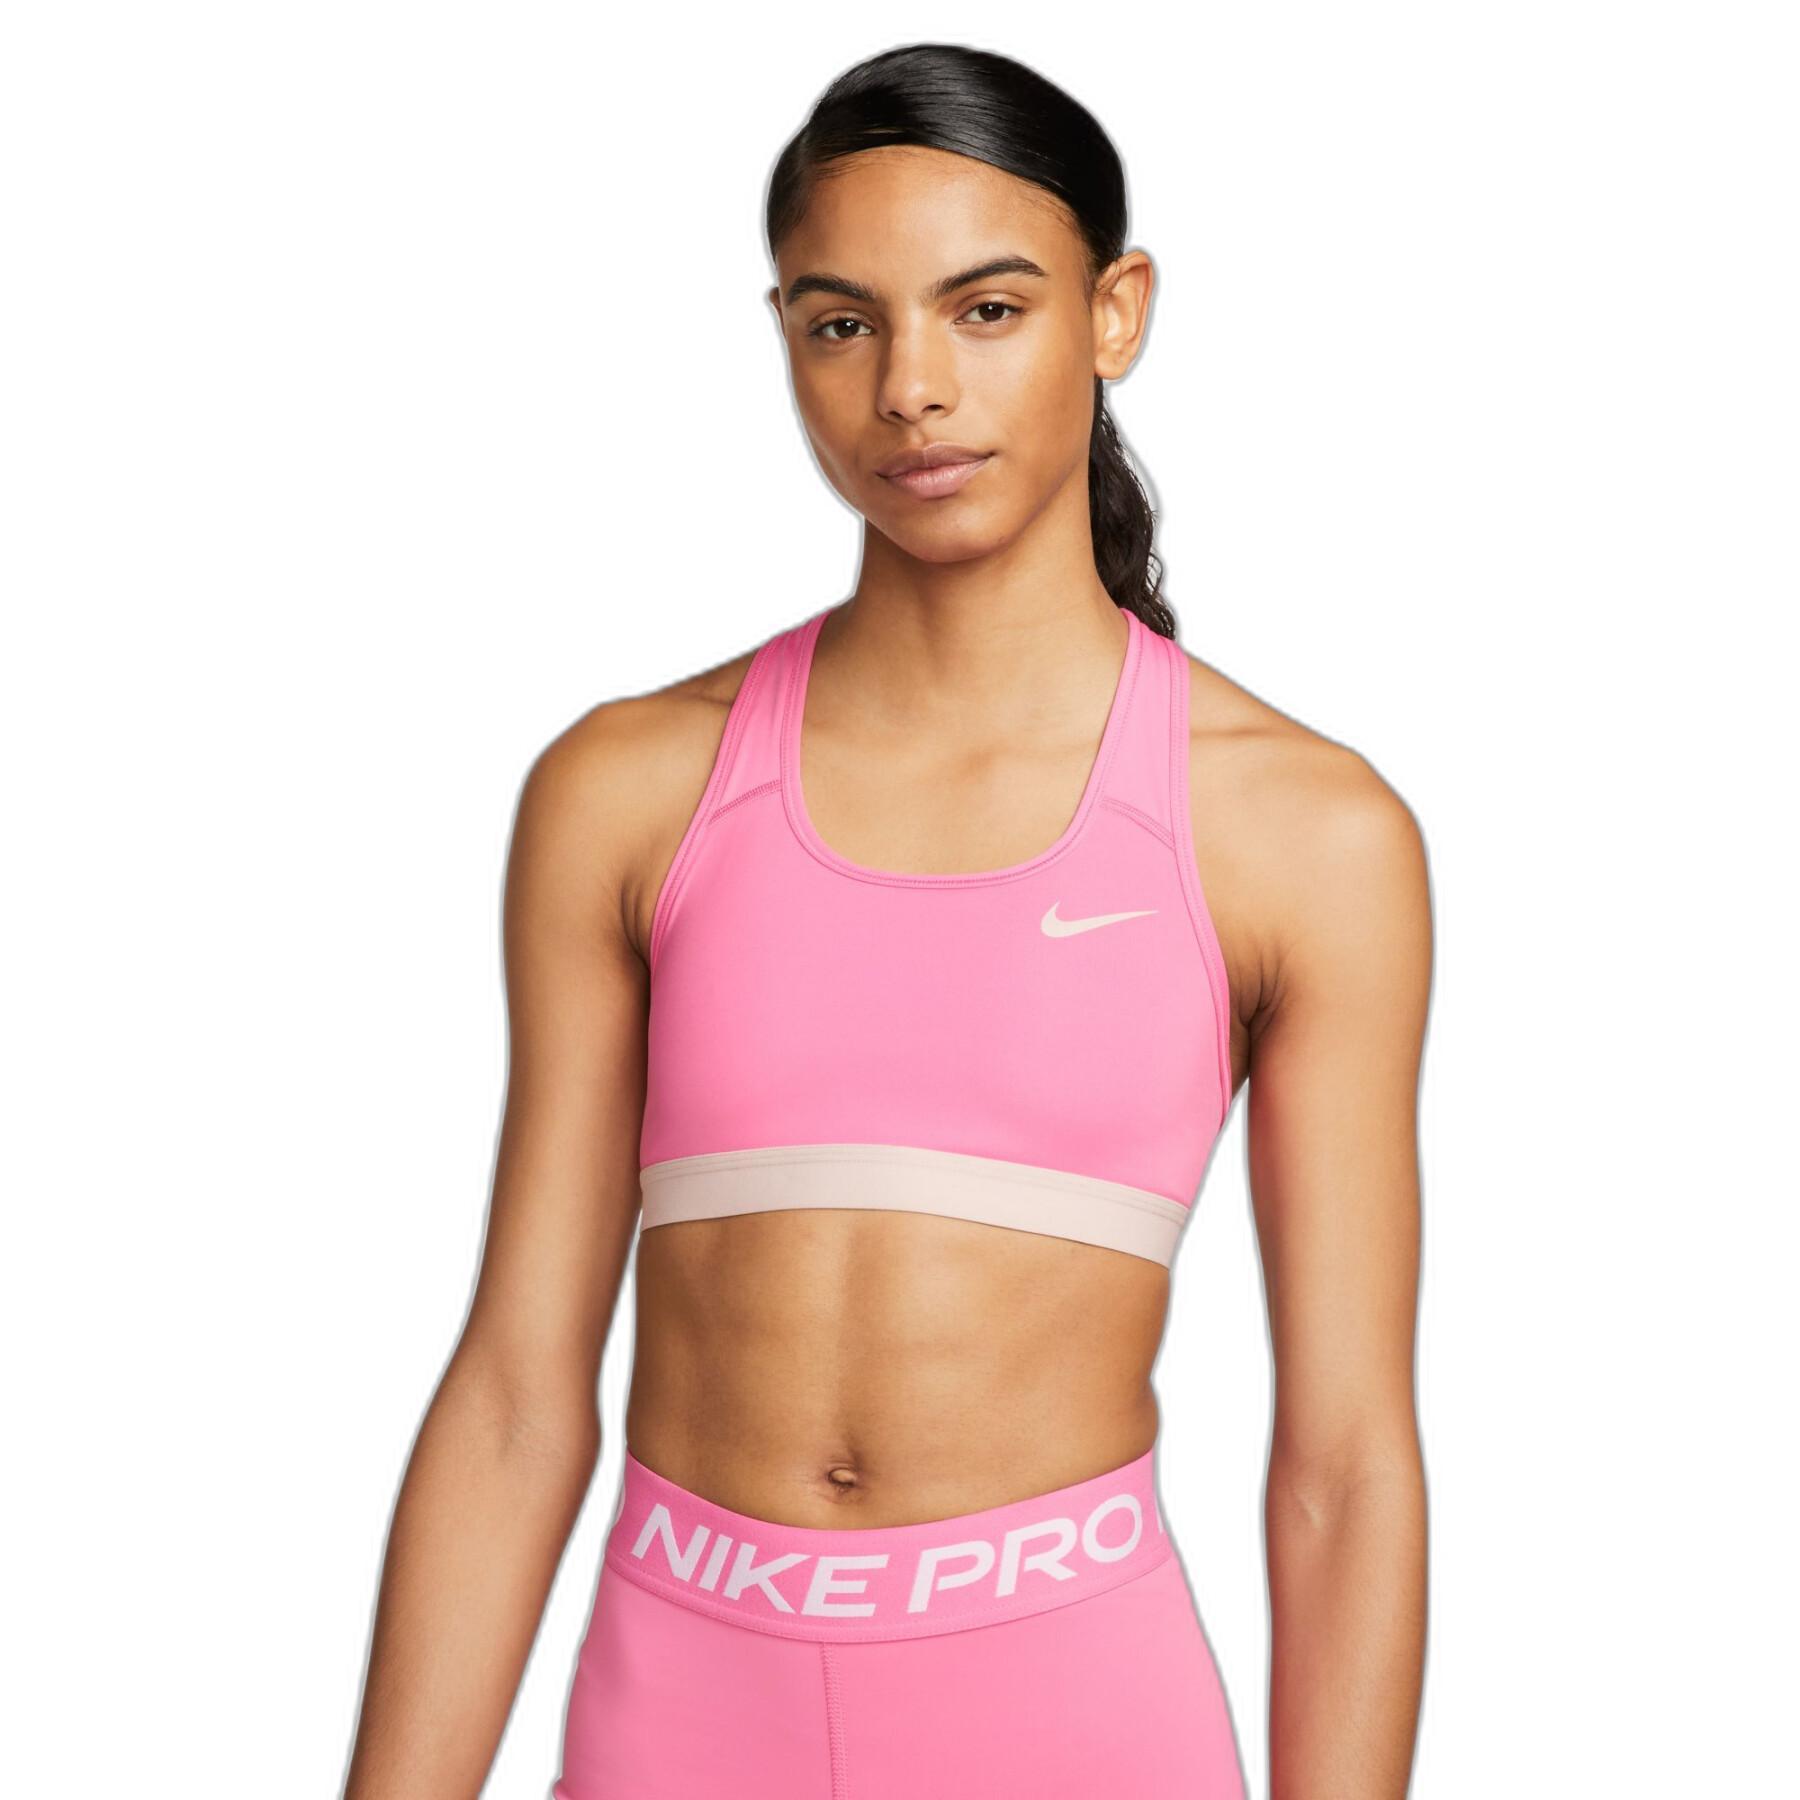 Women's wear - Sports bras - Mindarie-wa wear - Women's bra Nike Swoosh - nike  women air max 2015 white neon background